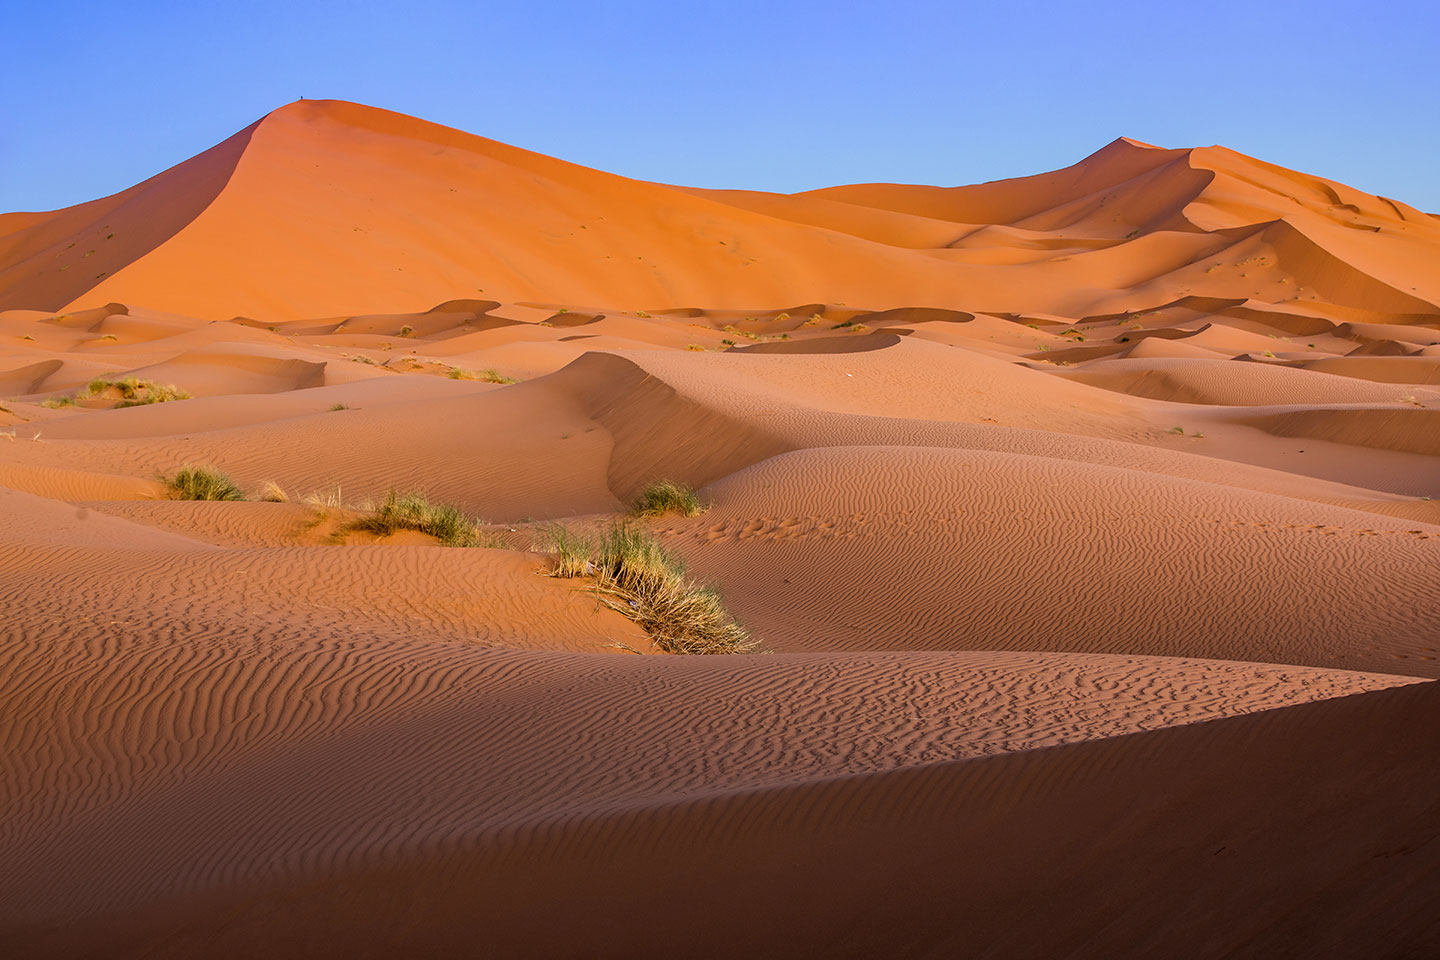 Giant sand dunes of the Sahara Desert in Morocco